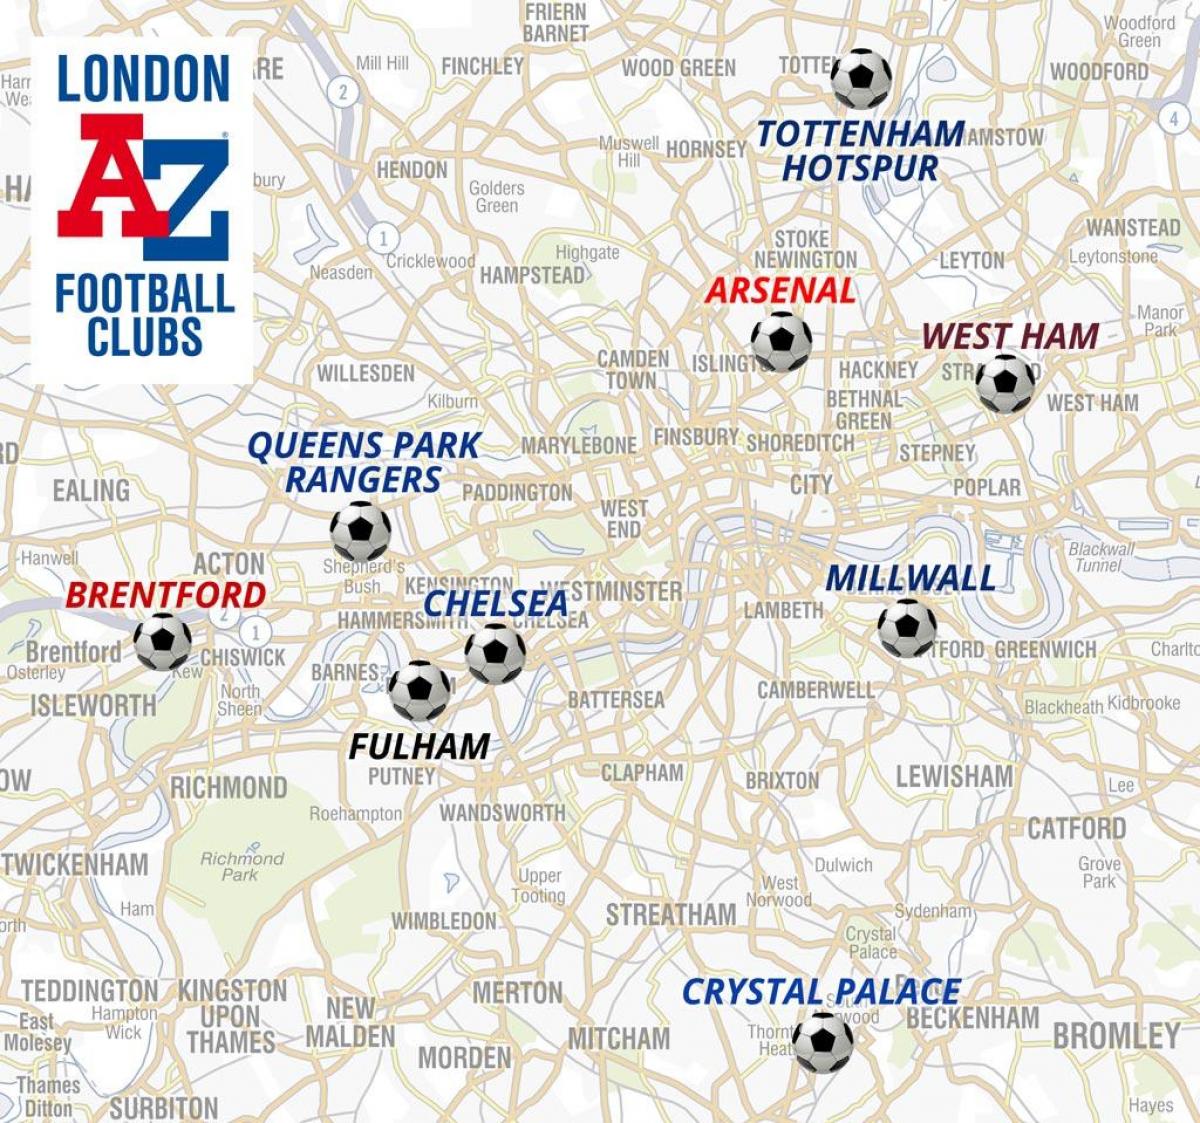 mapa dos estádios de futebol em Londres